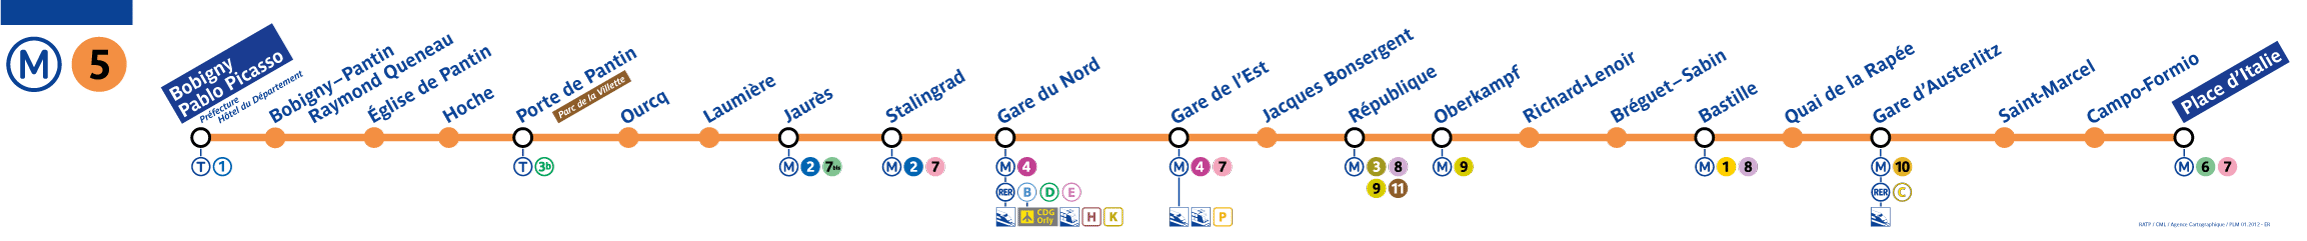 Paris metro line 5 map - Paris Metro Map